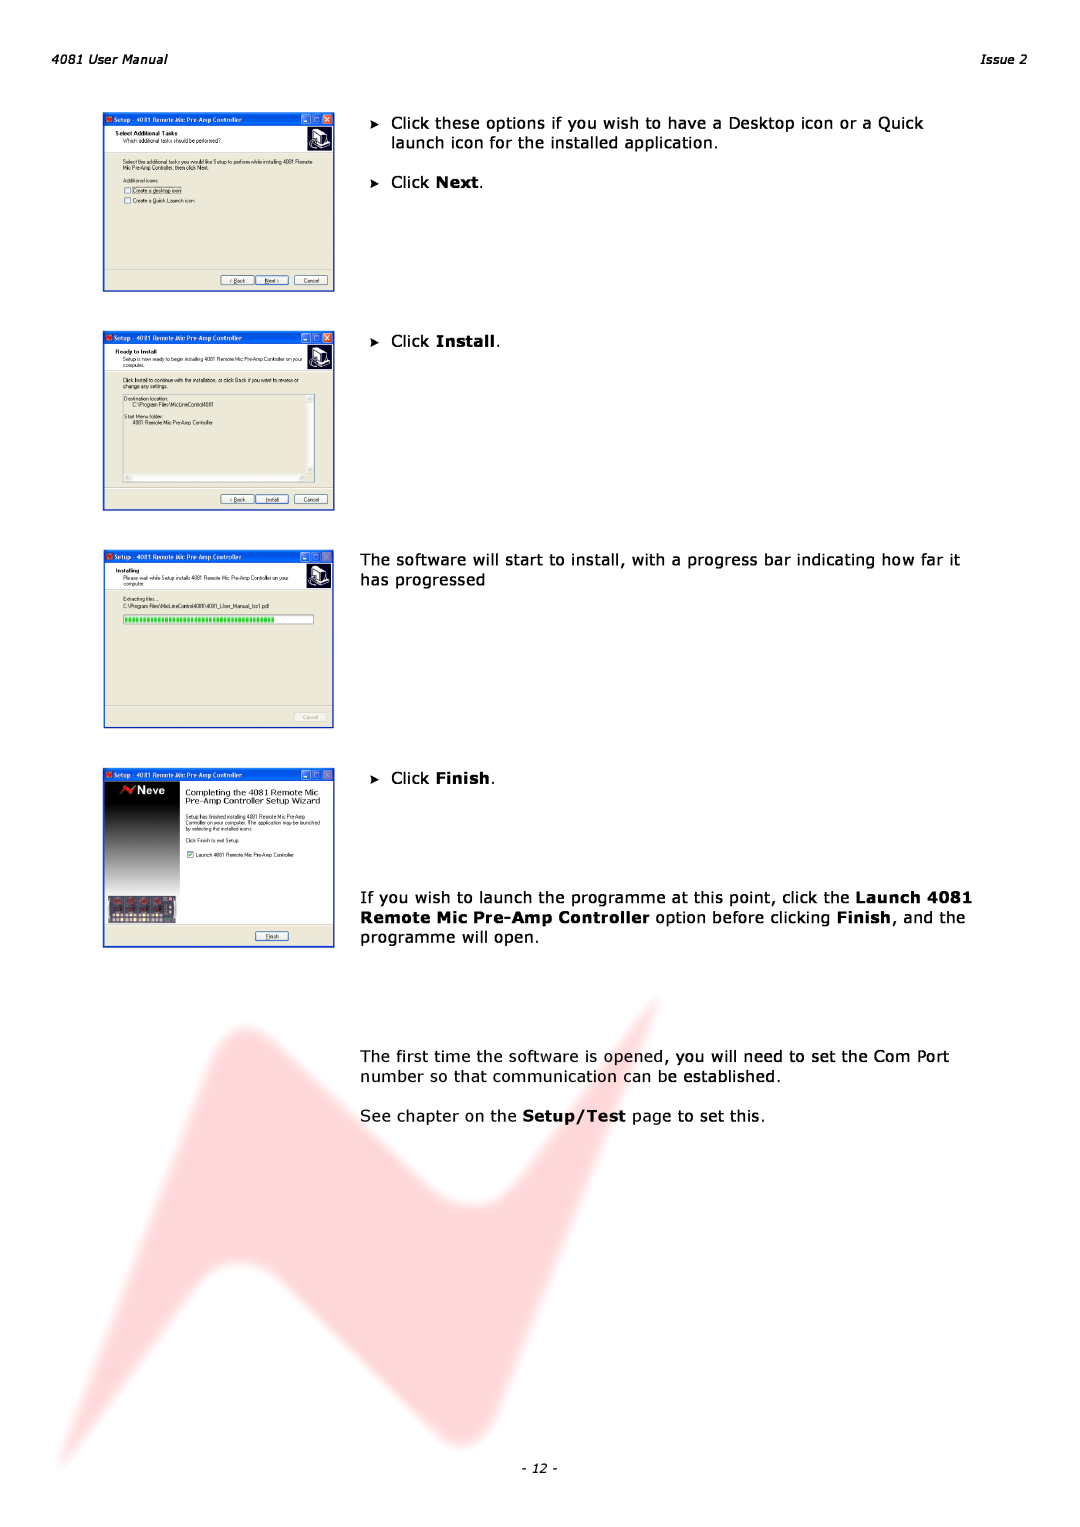 AMS 4081 user manual Click Next Click Install 